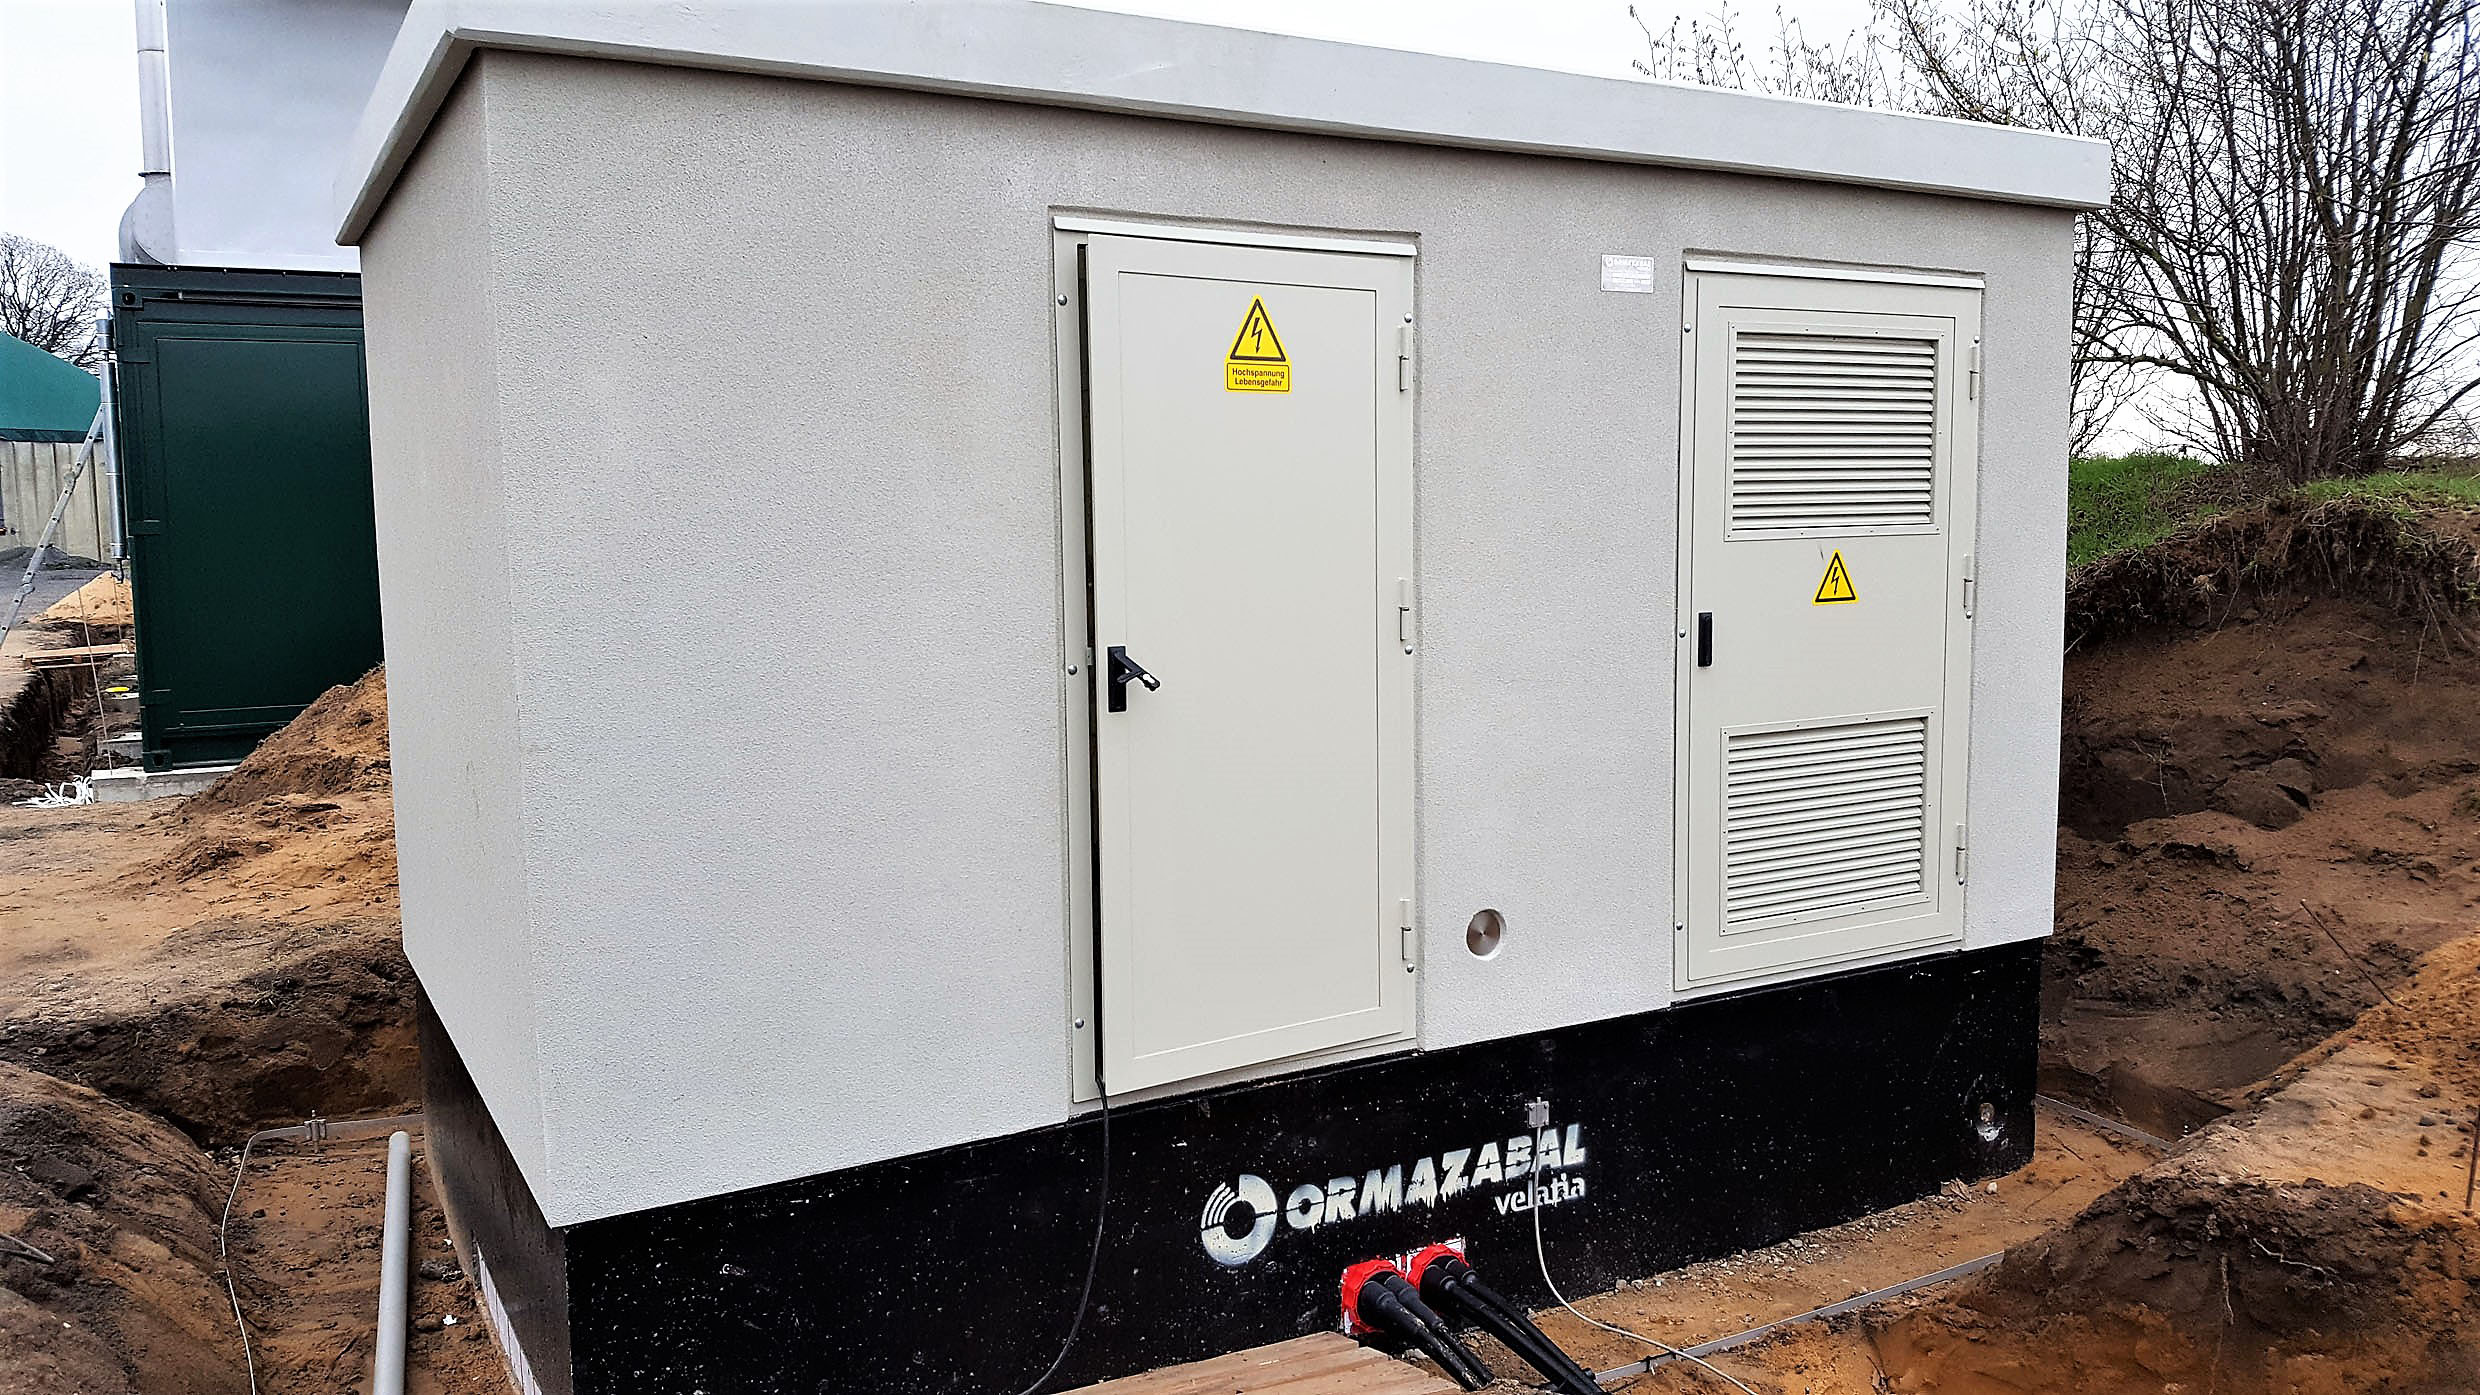  FÃ¼r die Erweiterung der Biogasanlage in Rietze lieferte Ormazabal eine begehbare Trafostation. Auch die darin installierte Schaltanlage und der Transformator stammen aus dem Portfolio des Experten fÃ¼r Energieverteilung. (Bild: Ormazabal GmbH)